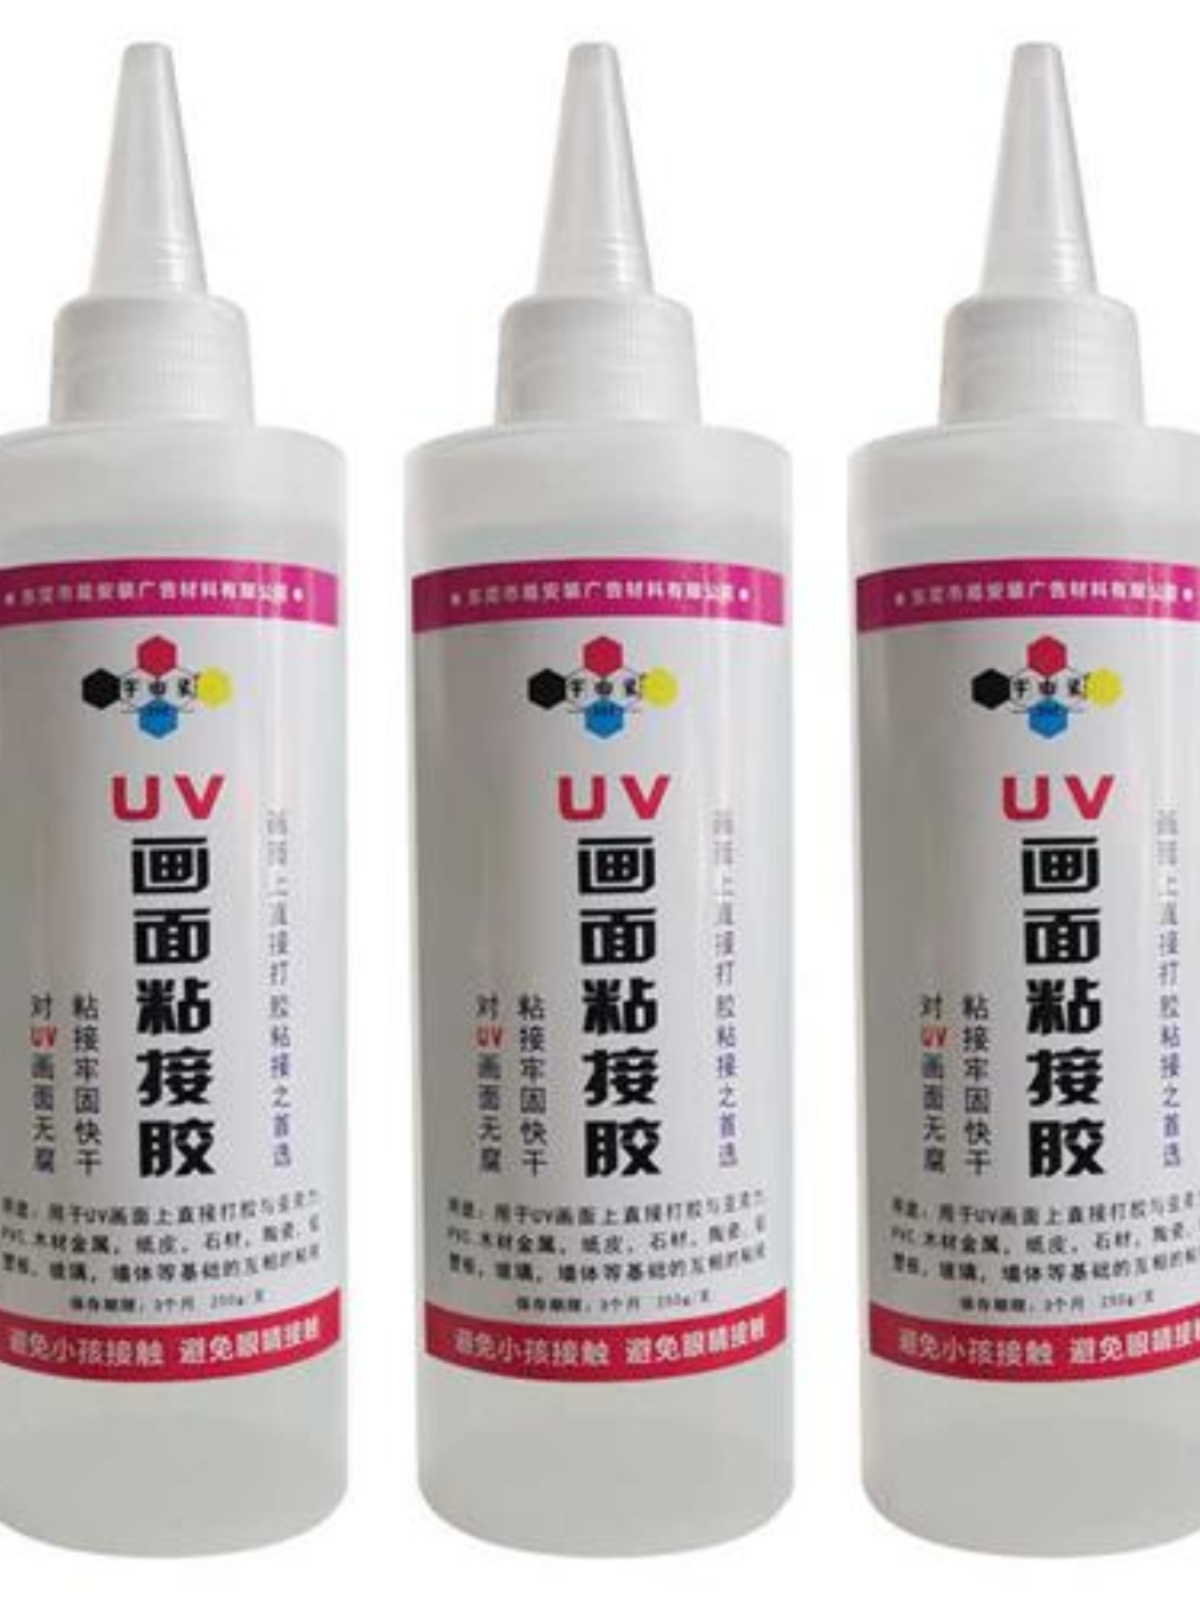 定制UV背喷无腐蚀专用粘贴胶 亚克力UV胶 贴片胶 UV画面与基础建